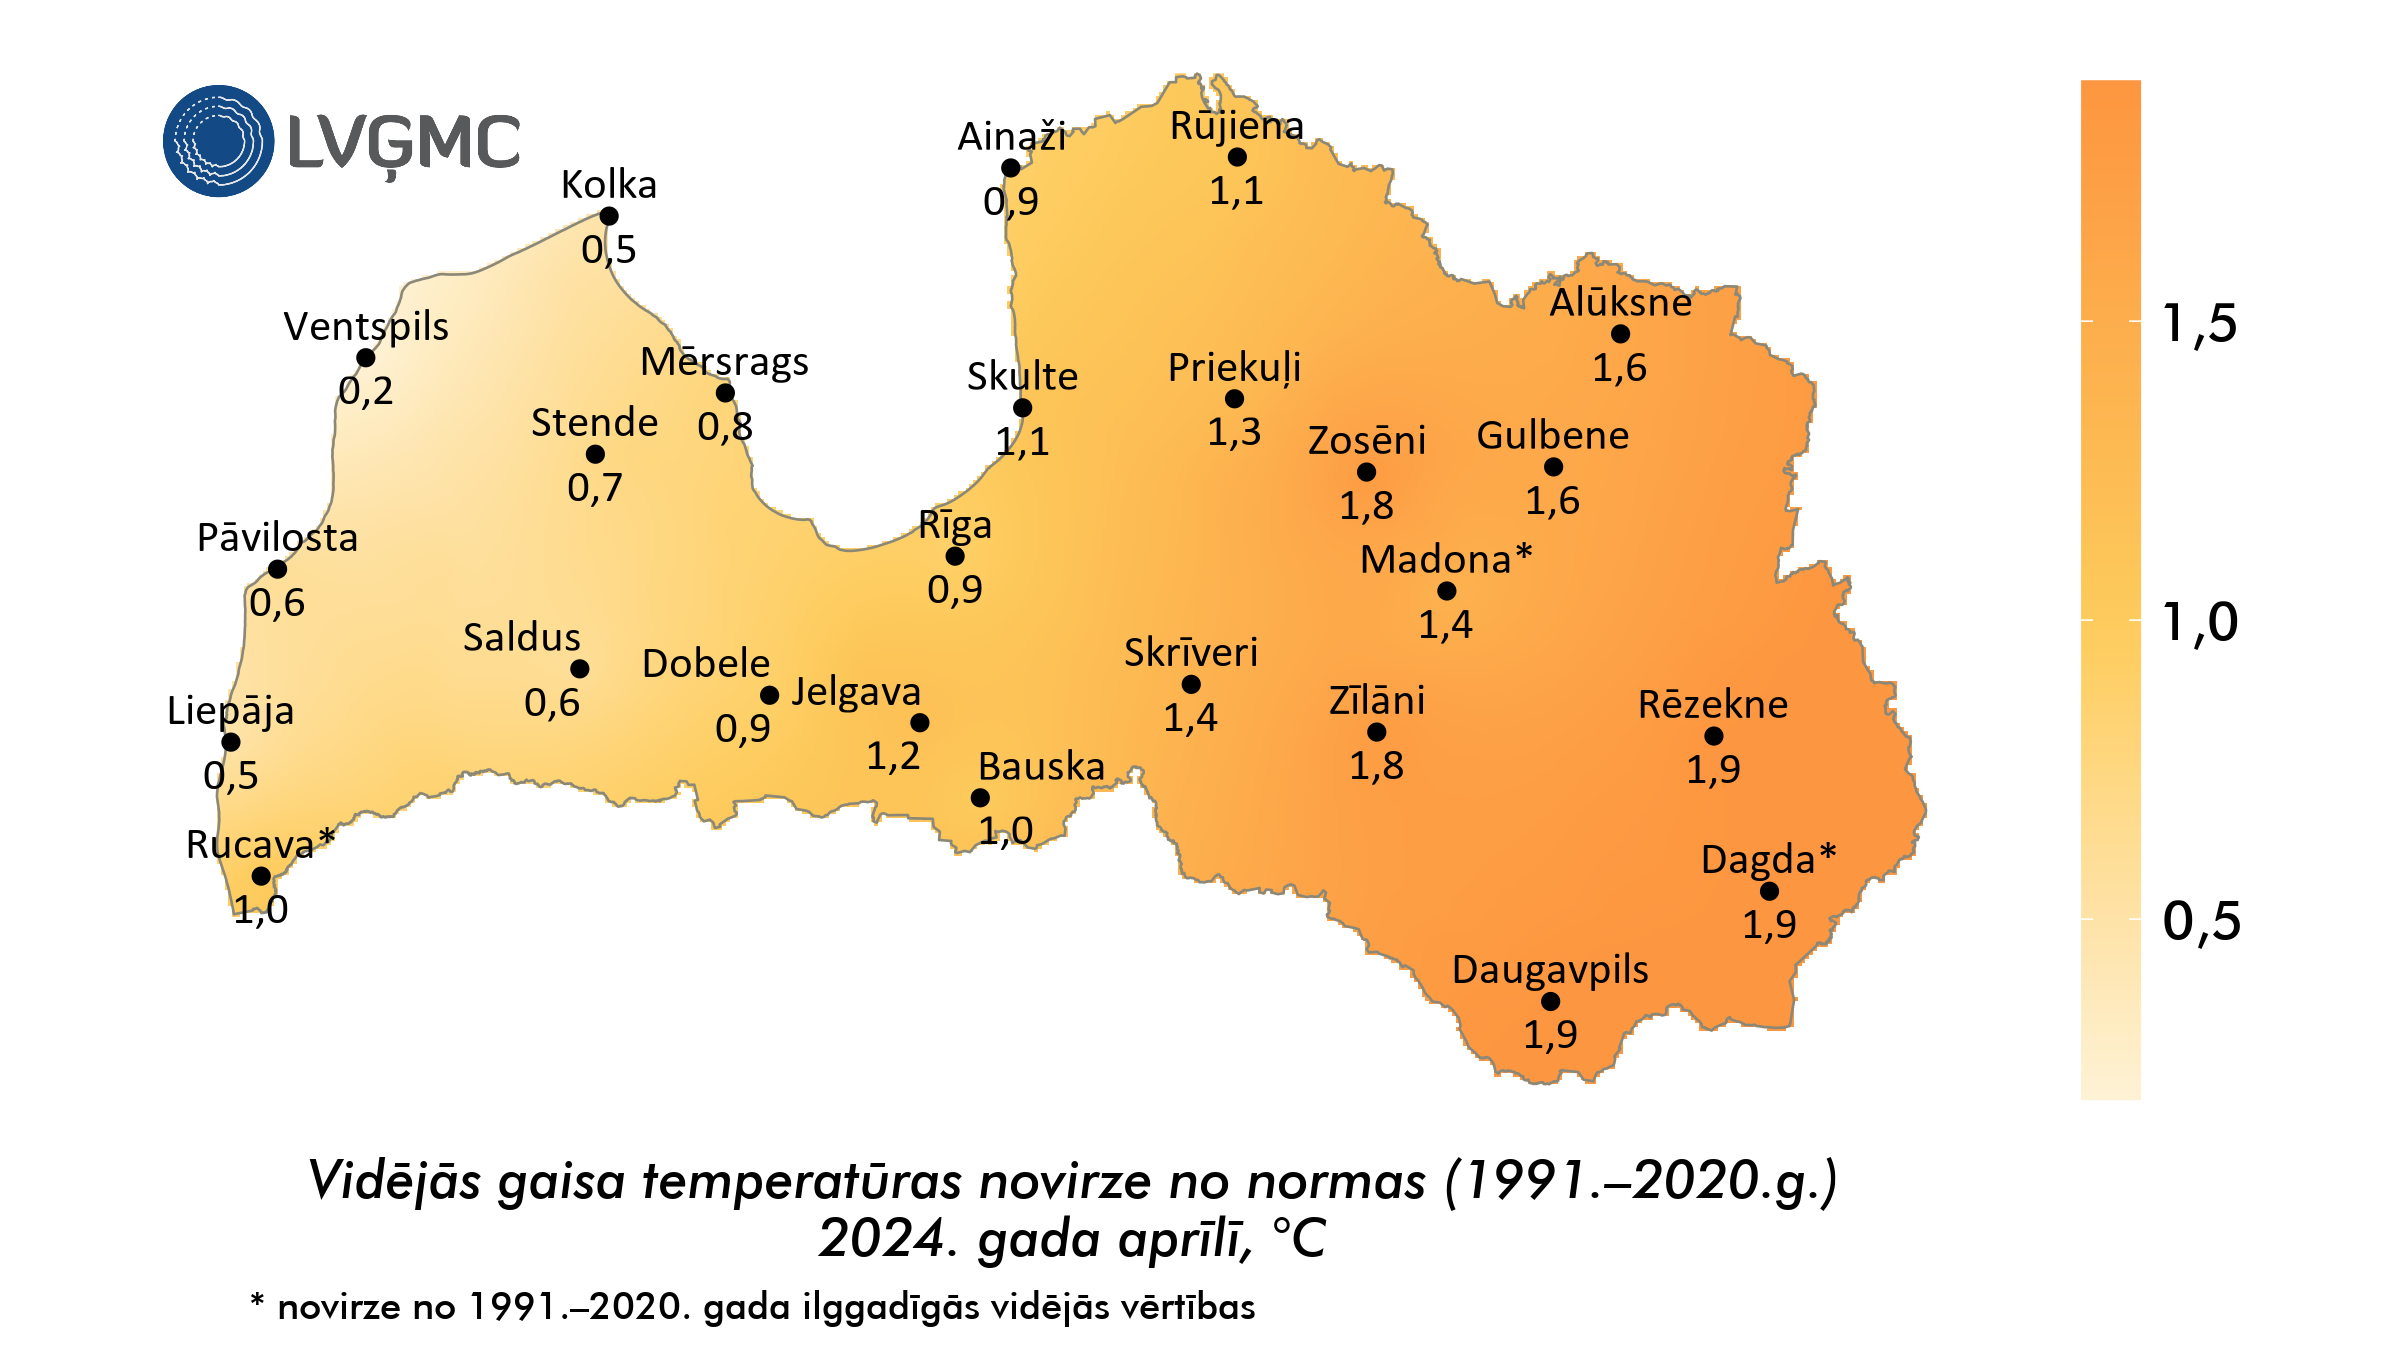 Vidējās gaisa temperatūras novirze no normas 2024. gada aprīlī, °C 